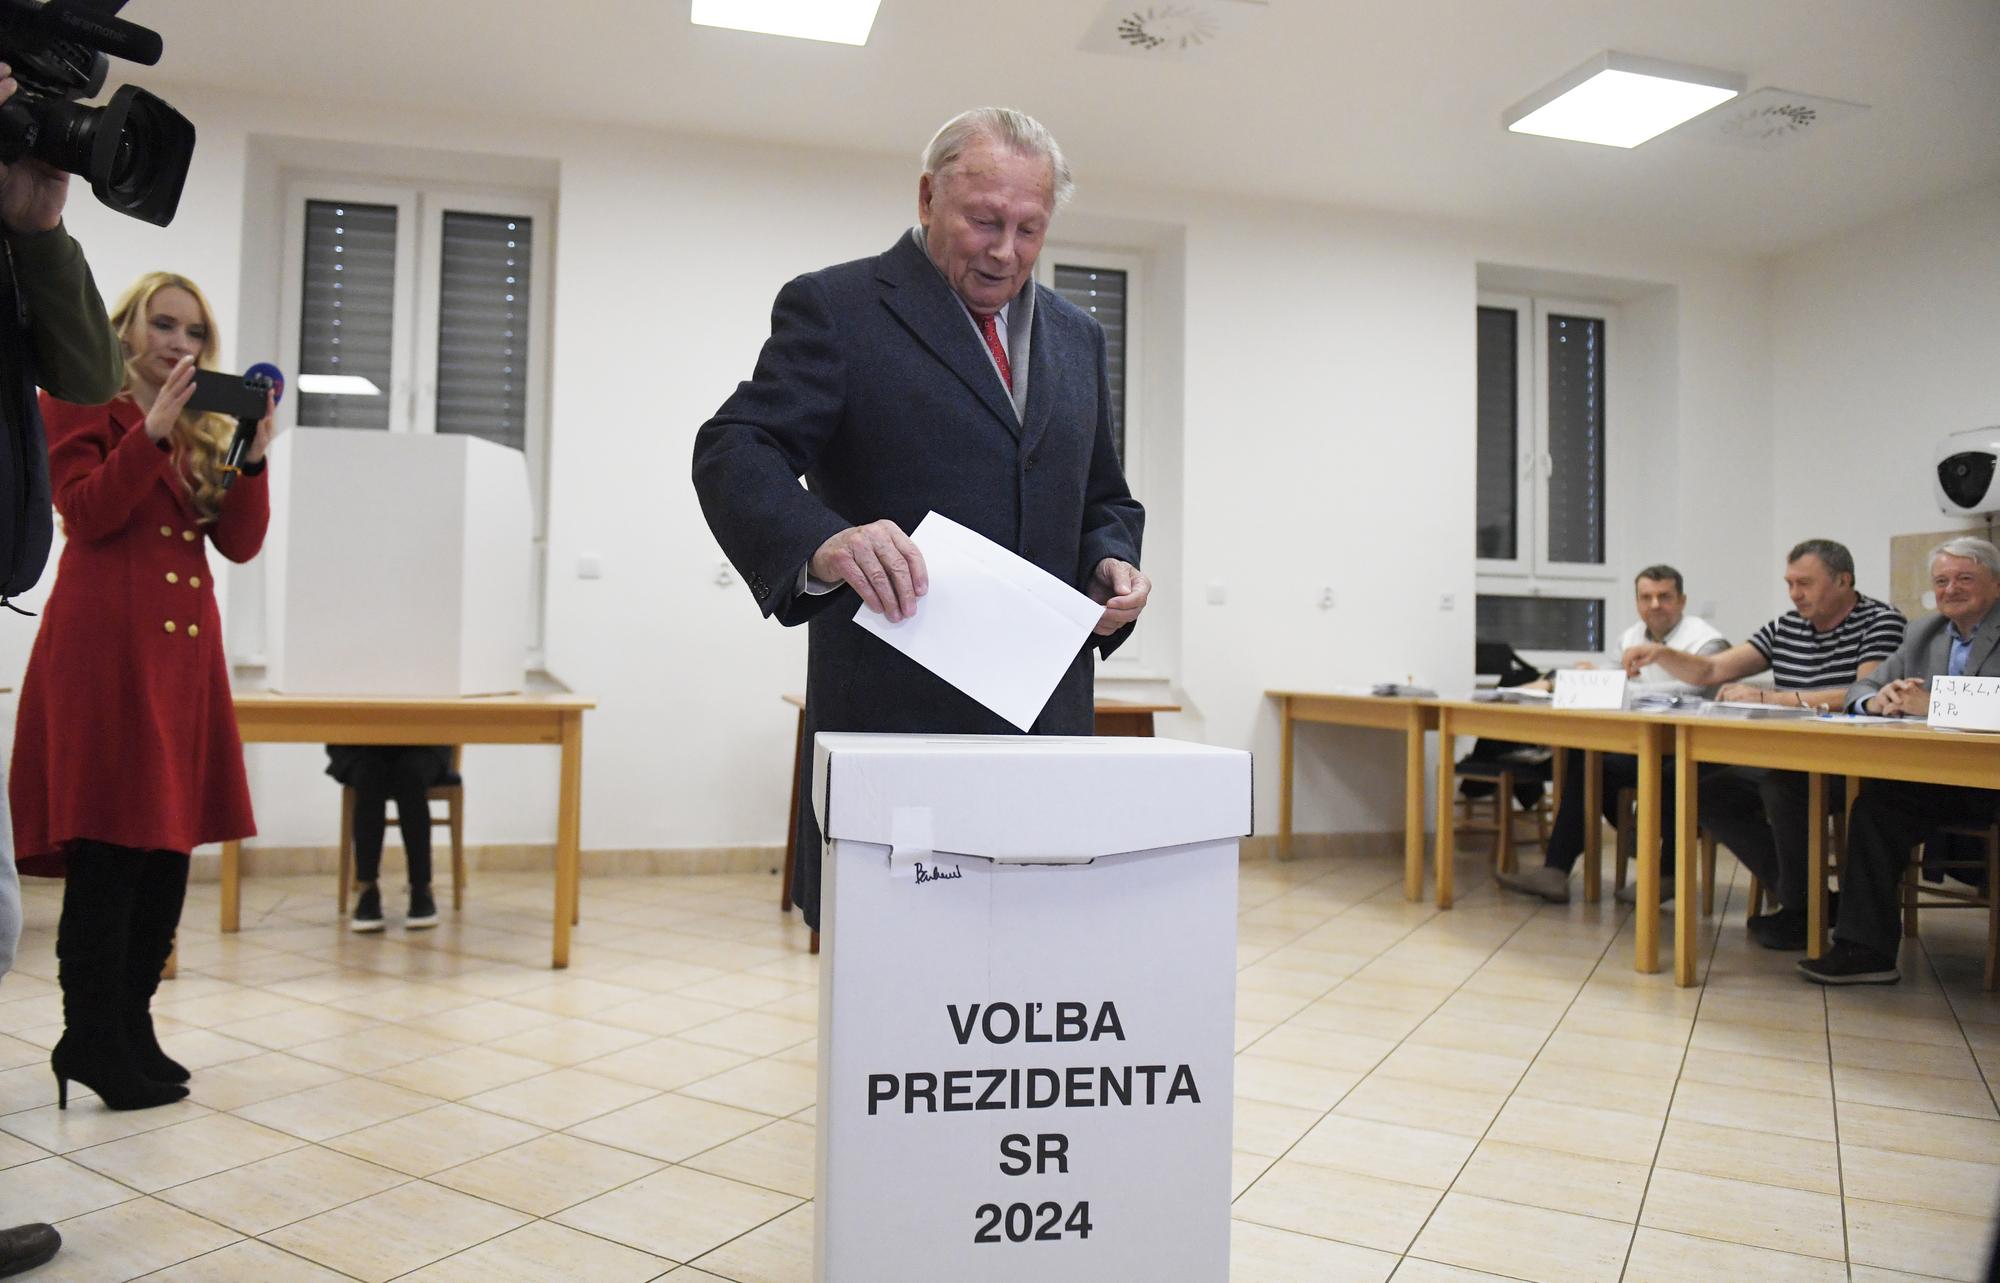 Exprezident Rudolf Schuster volil prezidenta v prvom kole volieb 2024 v Košiciach.